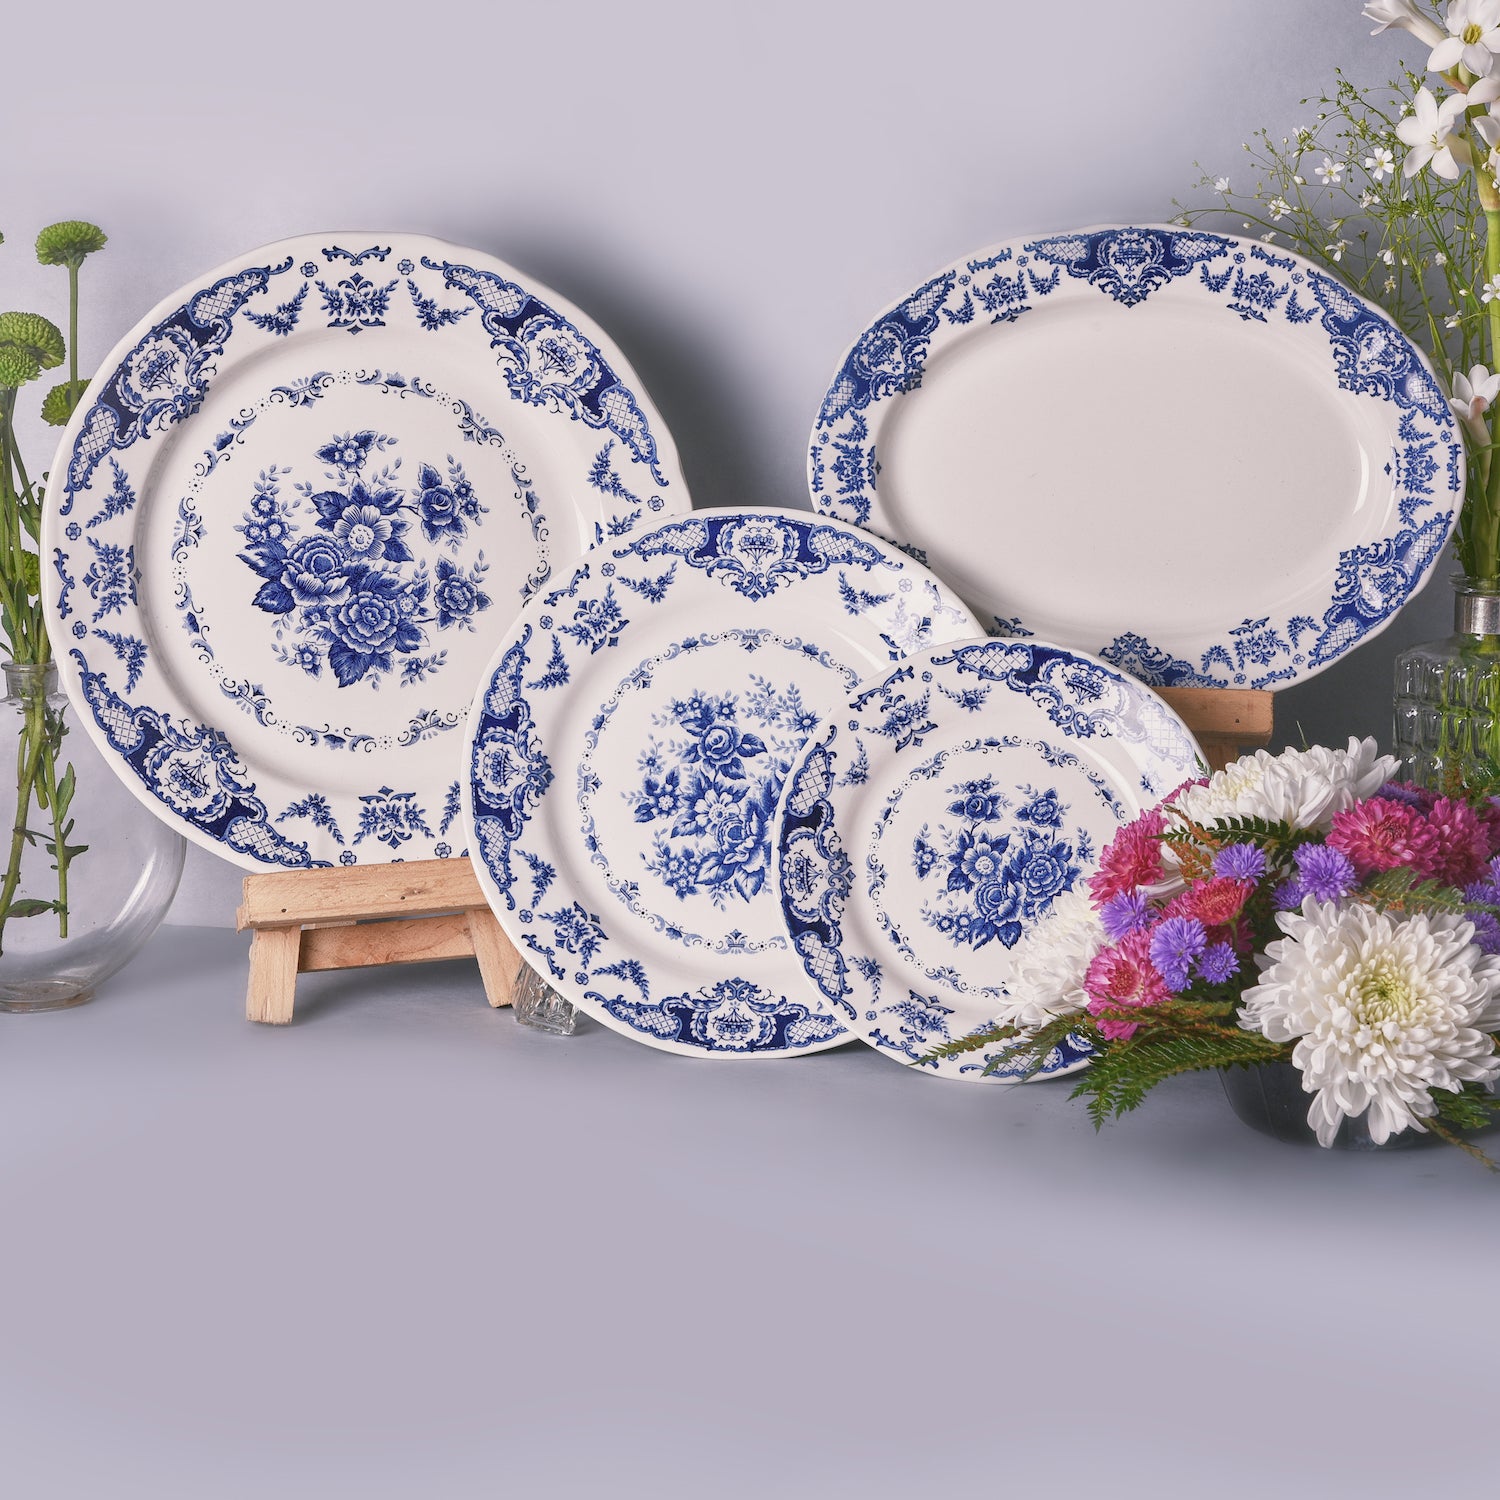 Rosetta Blue Dinner + Side Plate Set